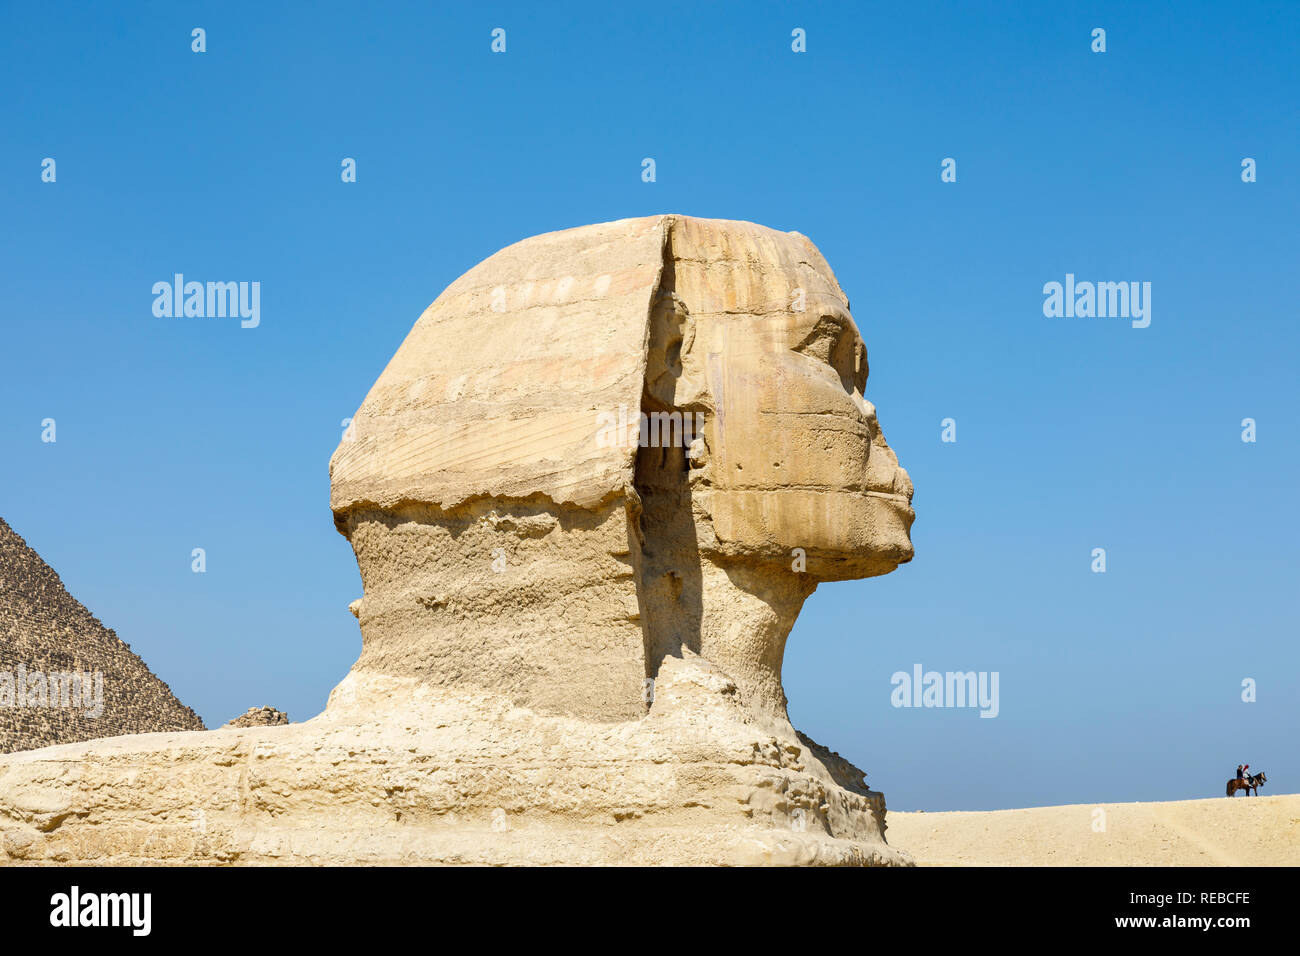 Seitenansicht der große Kopf der legendären monumentale Skulptur, die Große Sphinx von Gizeh, Giza Plateau, Kairo, Ägypten gegen einen klaren blauen Himmel Stockfoto